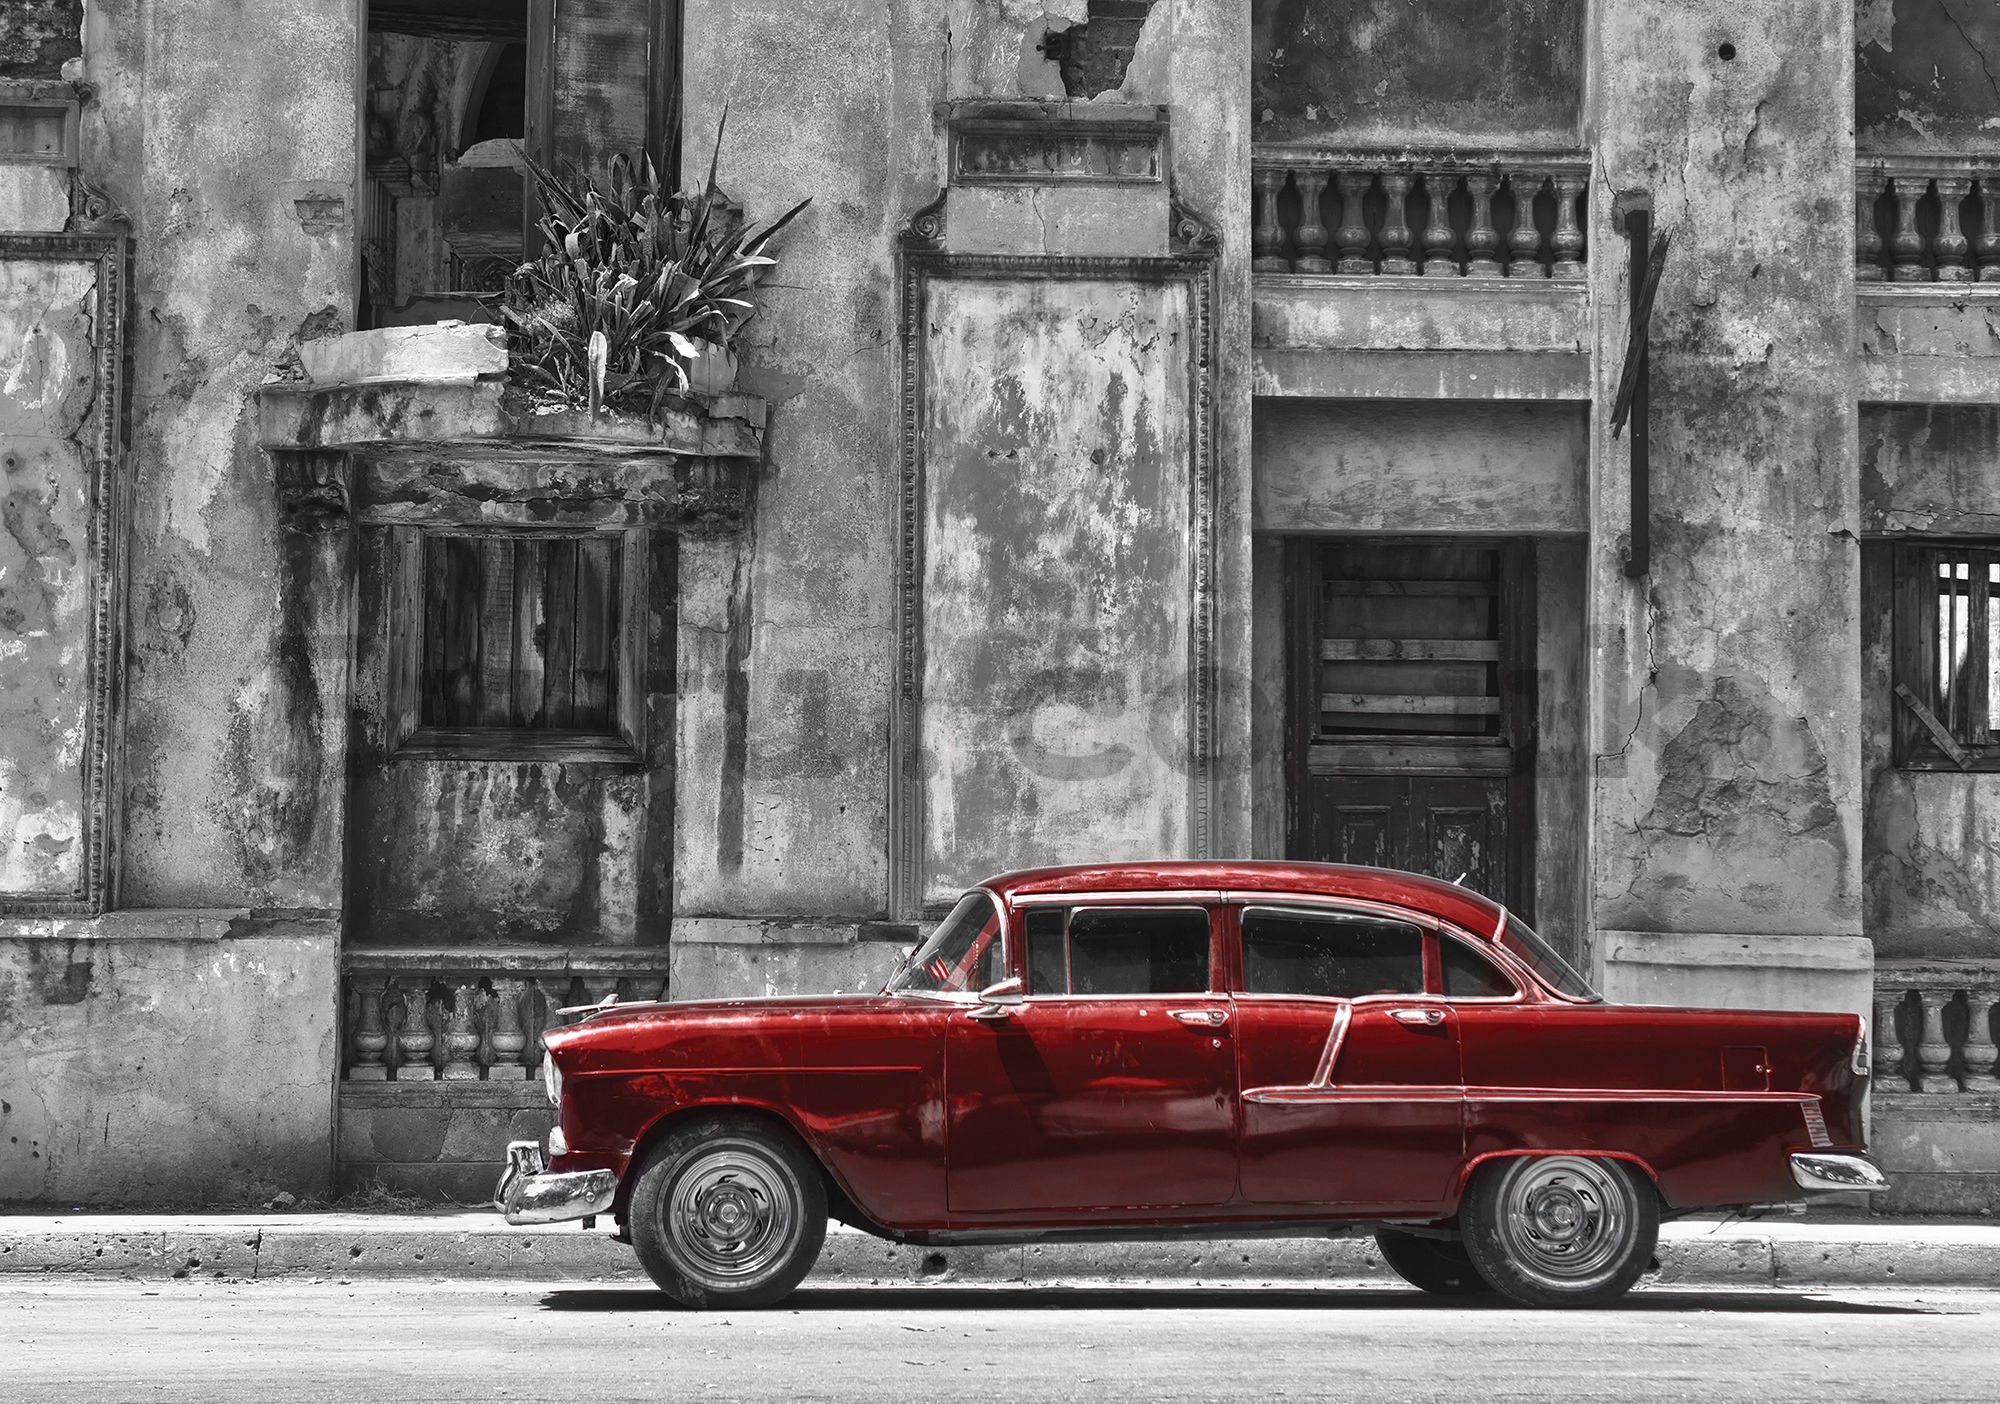 Wall mural: Cuban street red car - 184x254 cm